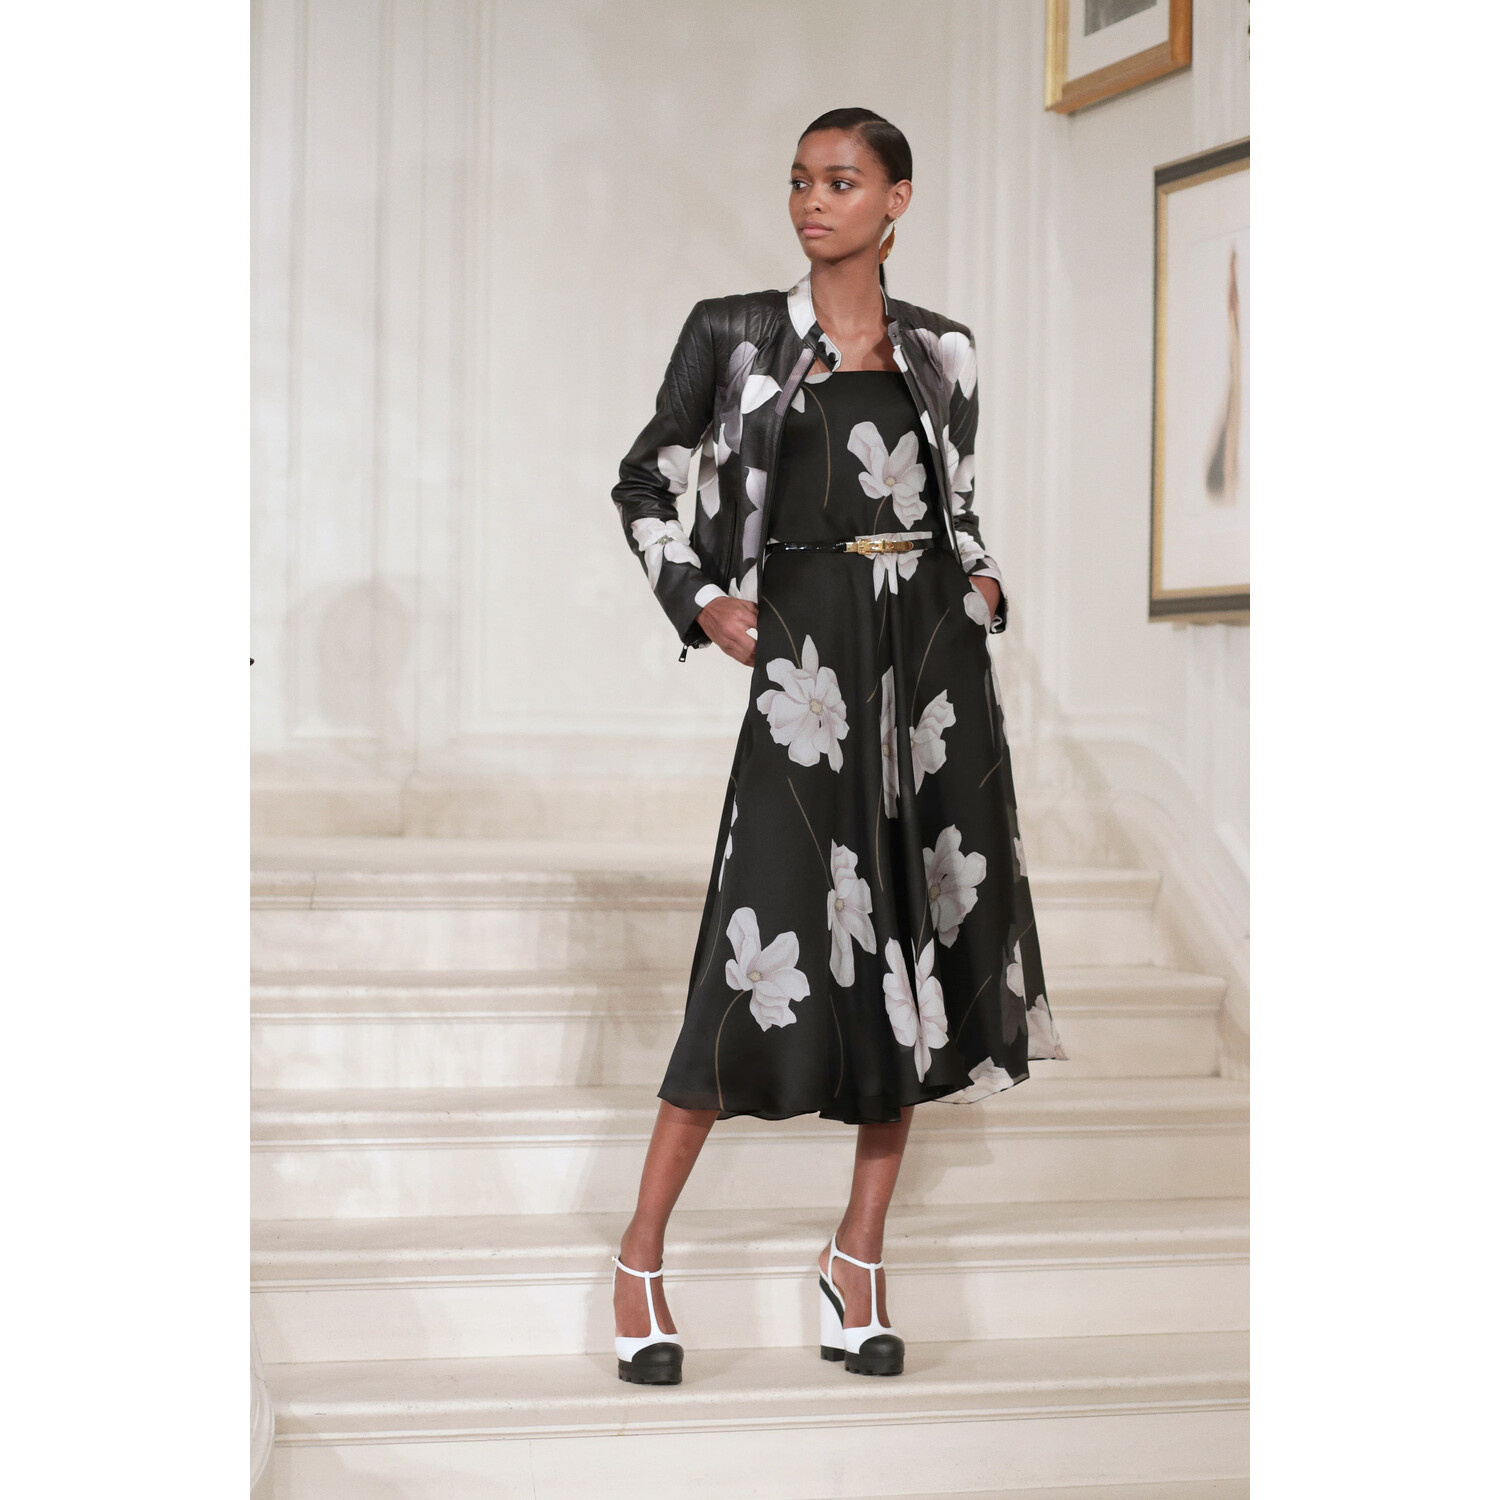 Фото Ralph Lauren Spring 2019 Ready-to-Wear / Ralph Lauren Весна-Лето 2019 / Неделя моды в Нью-Йорке